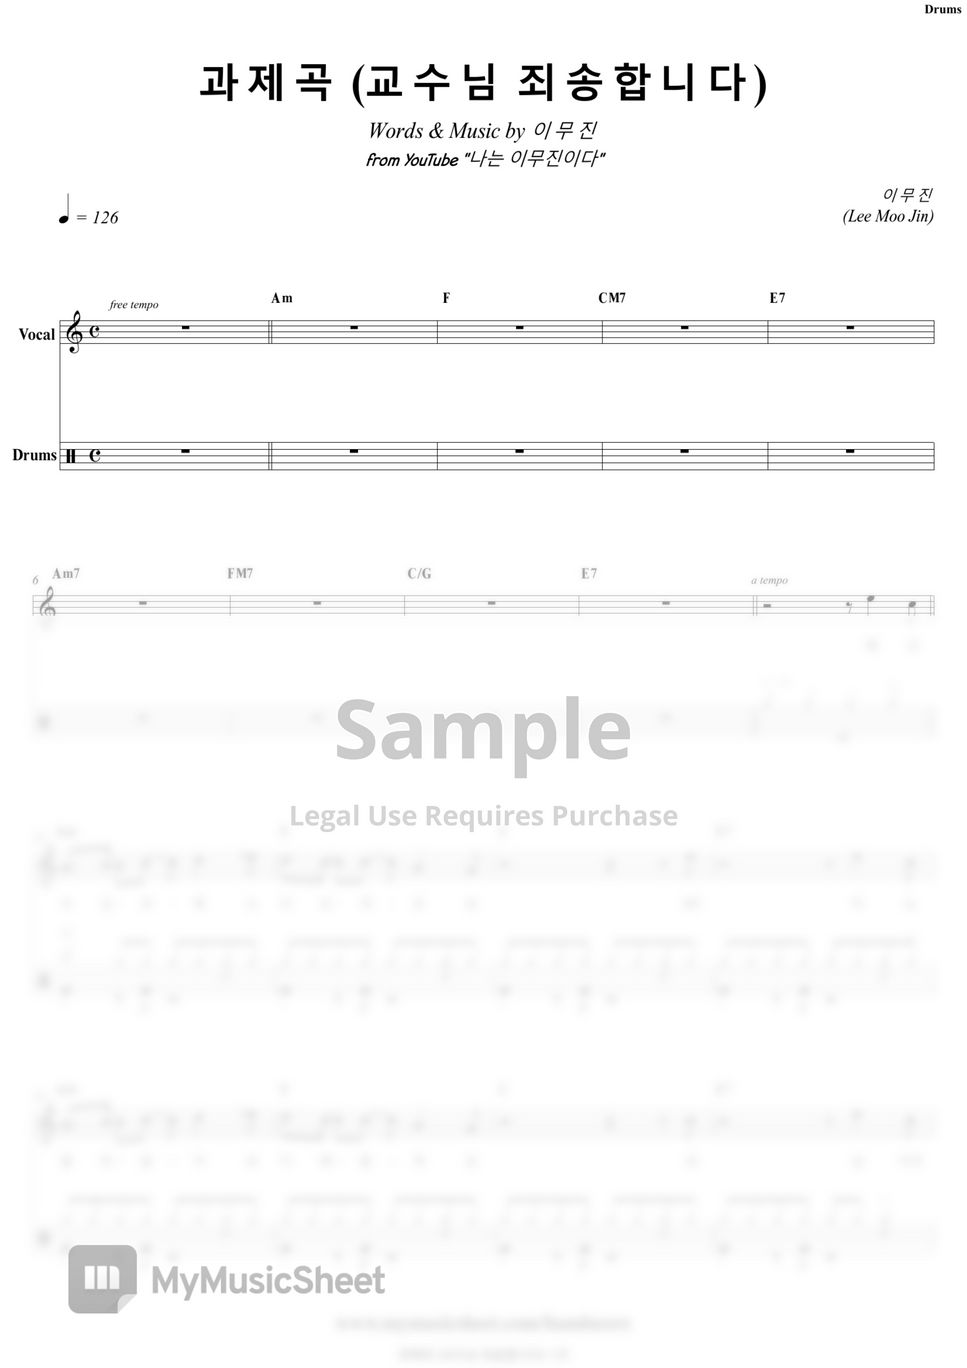 Lee Moo Jin - Homework (Sorry, Prof.) | Band Score